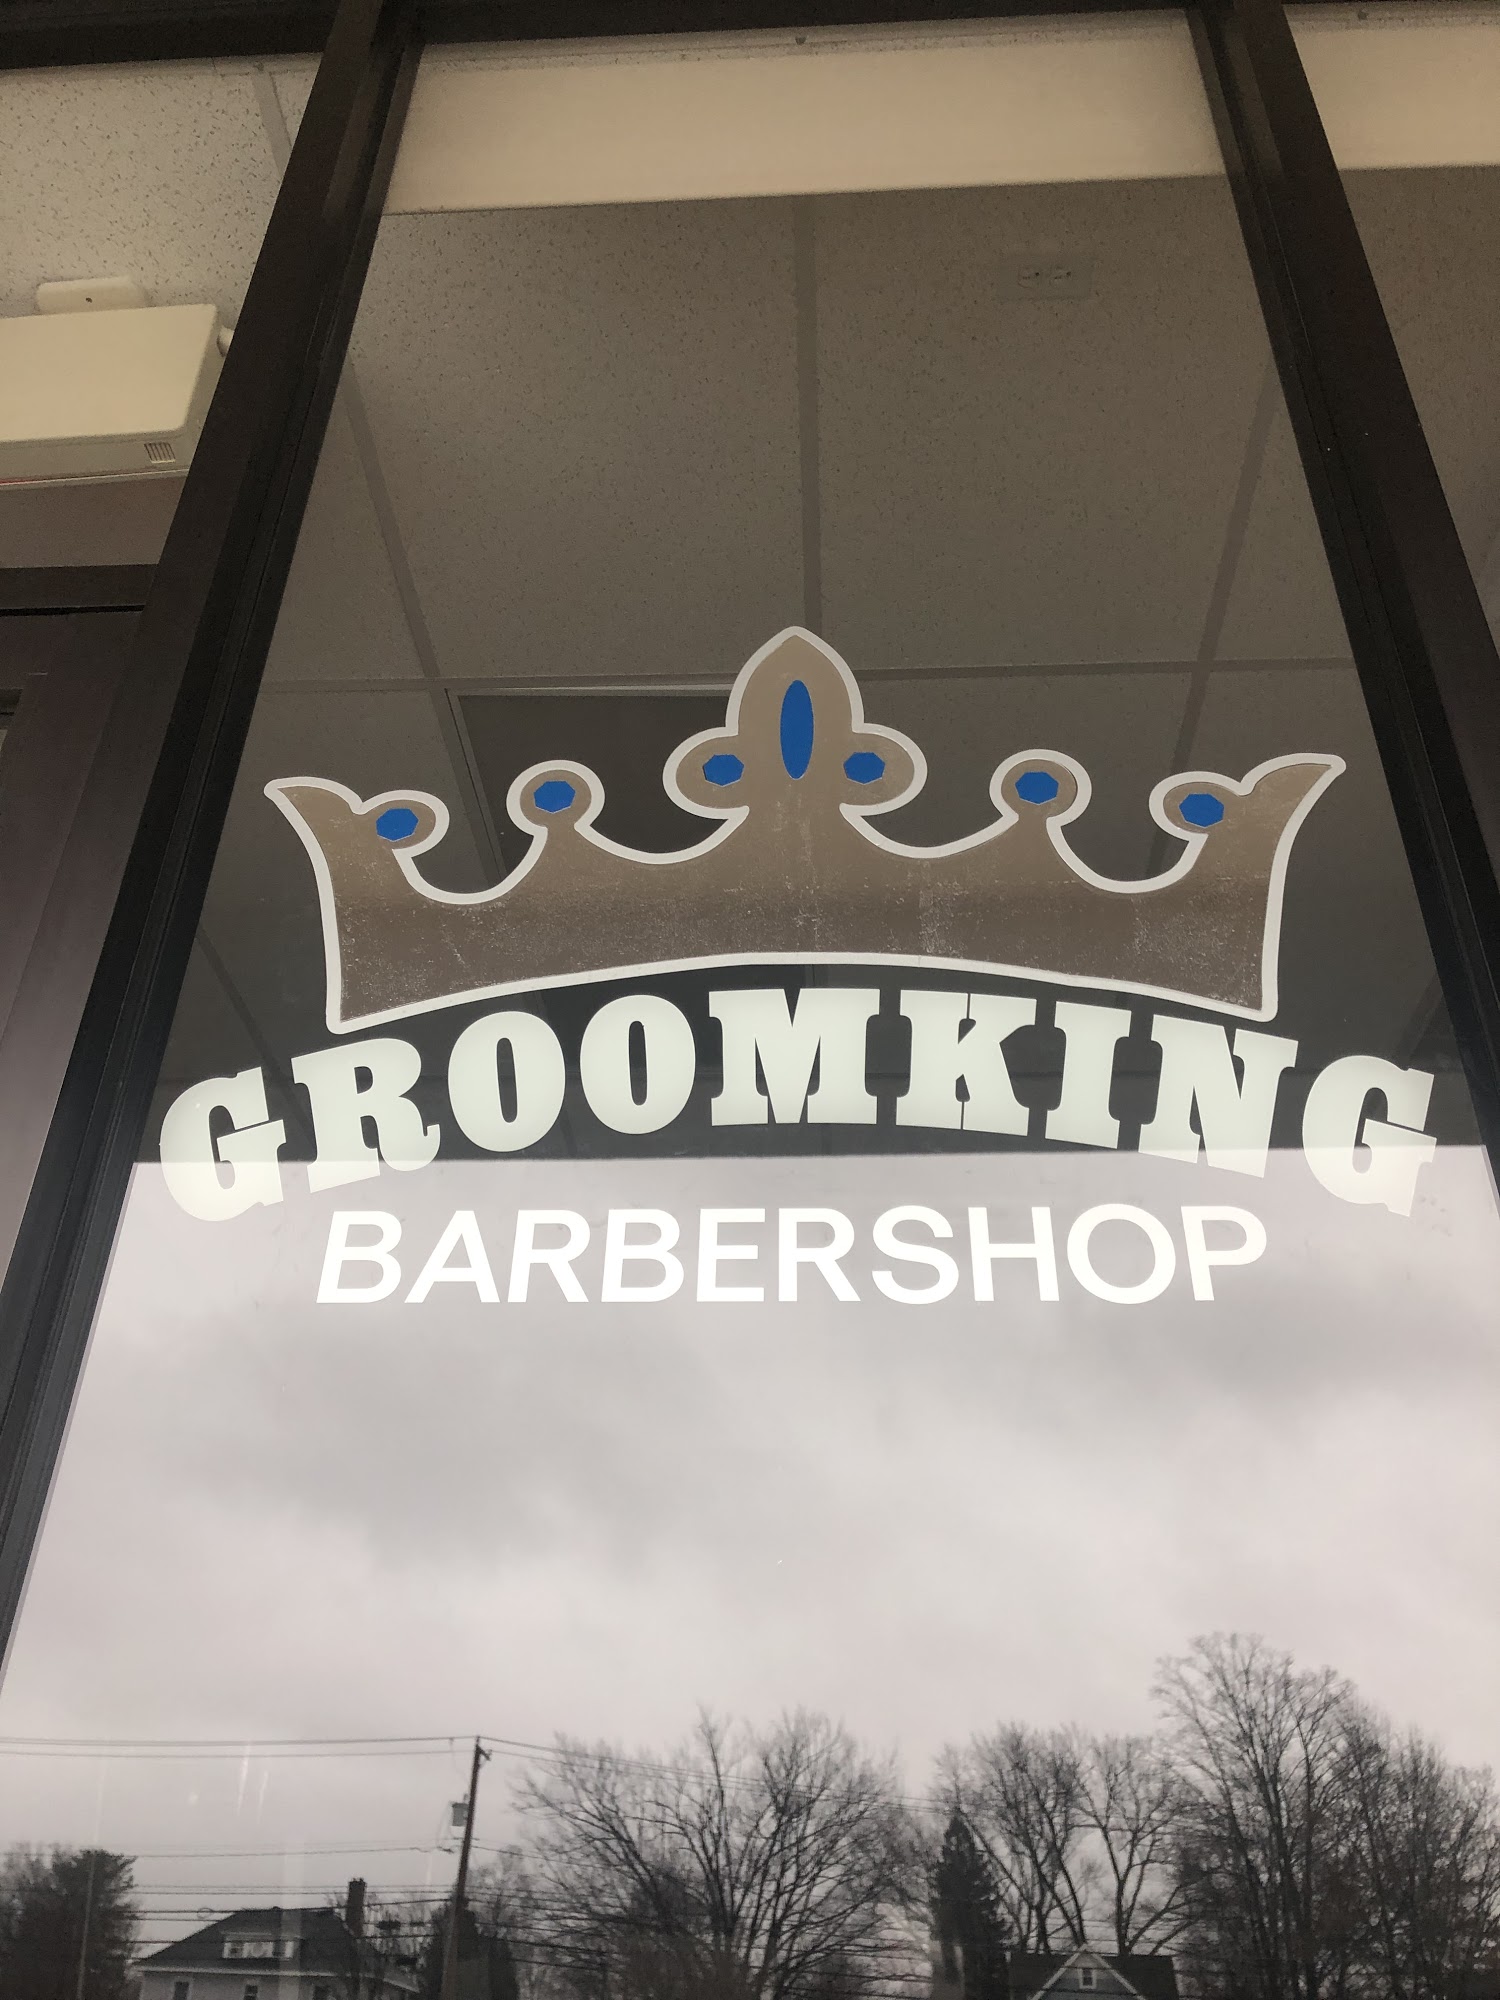 GroomKing Barbershop